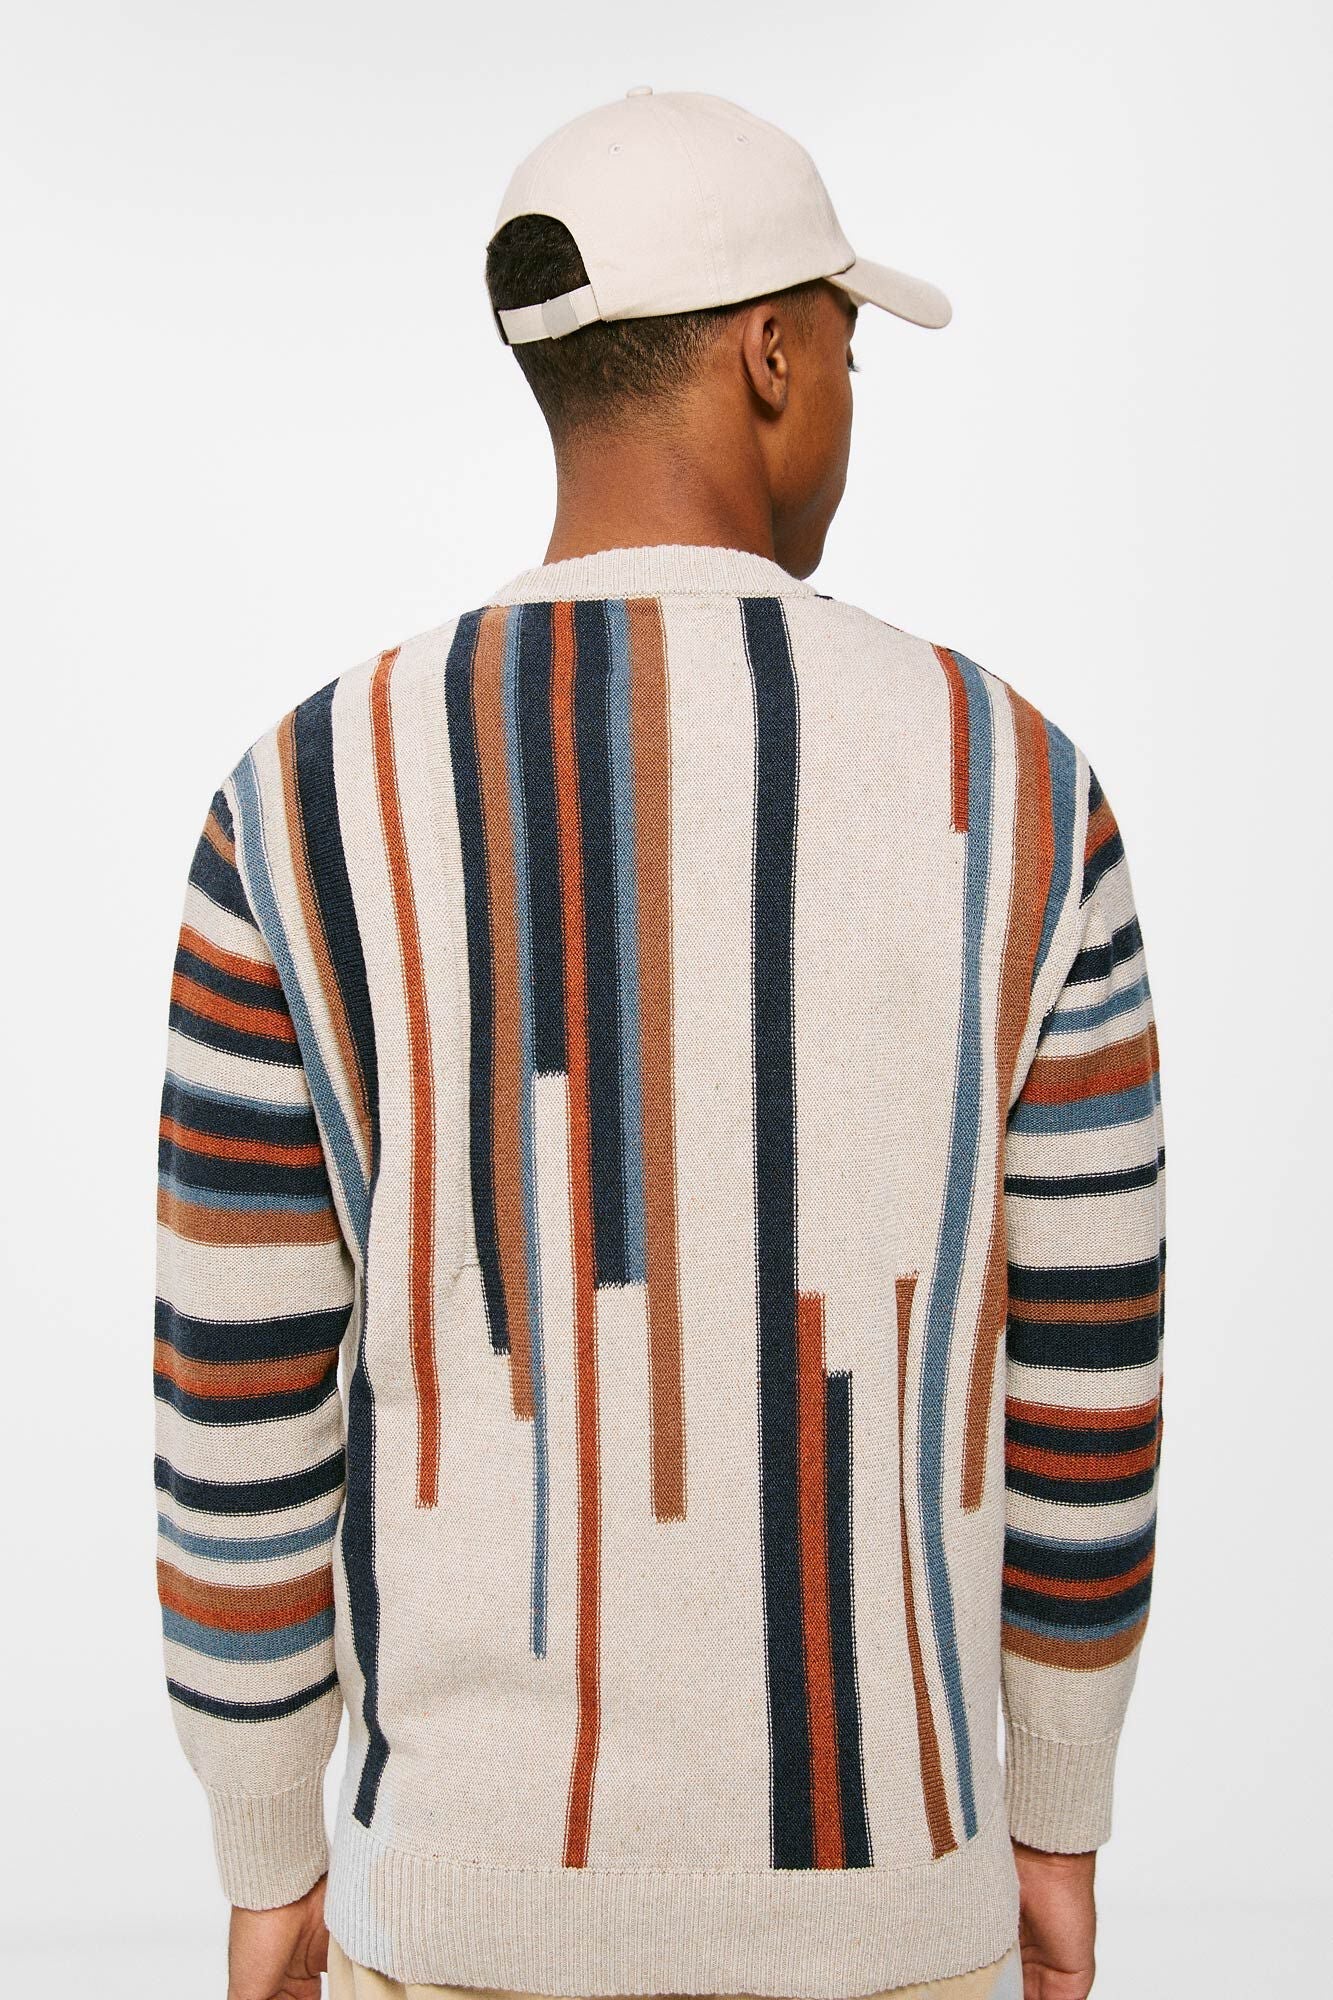 Vertical striped jumper